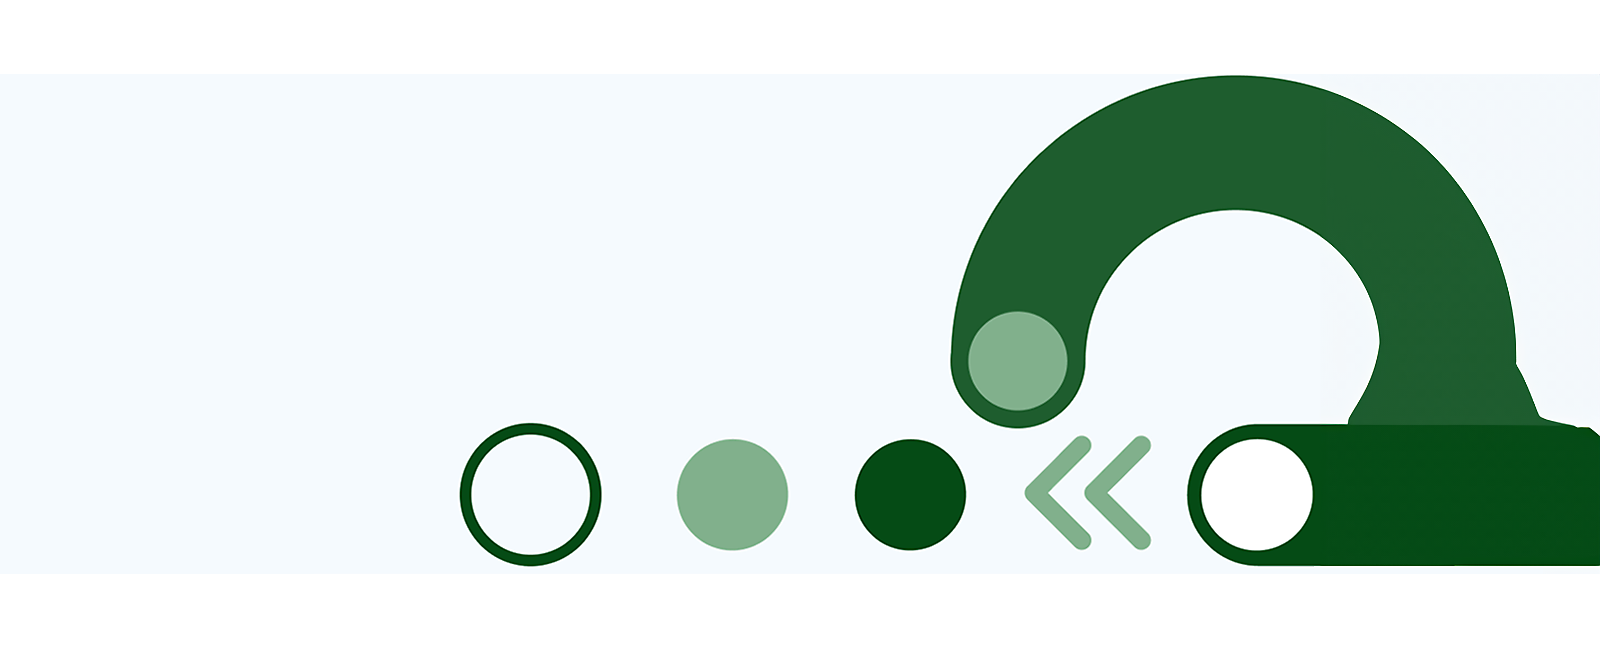 Abstrakta gröna figurer och linjer mot en vit bakgrund.